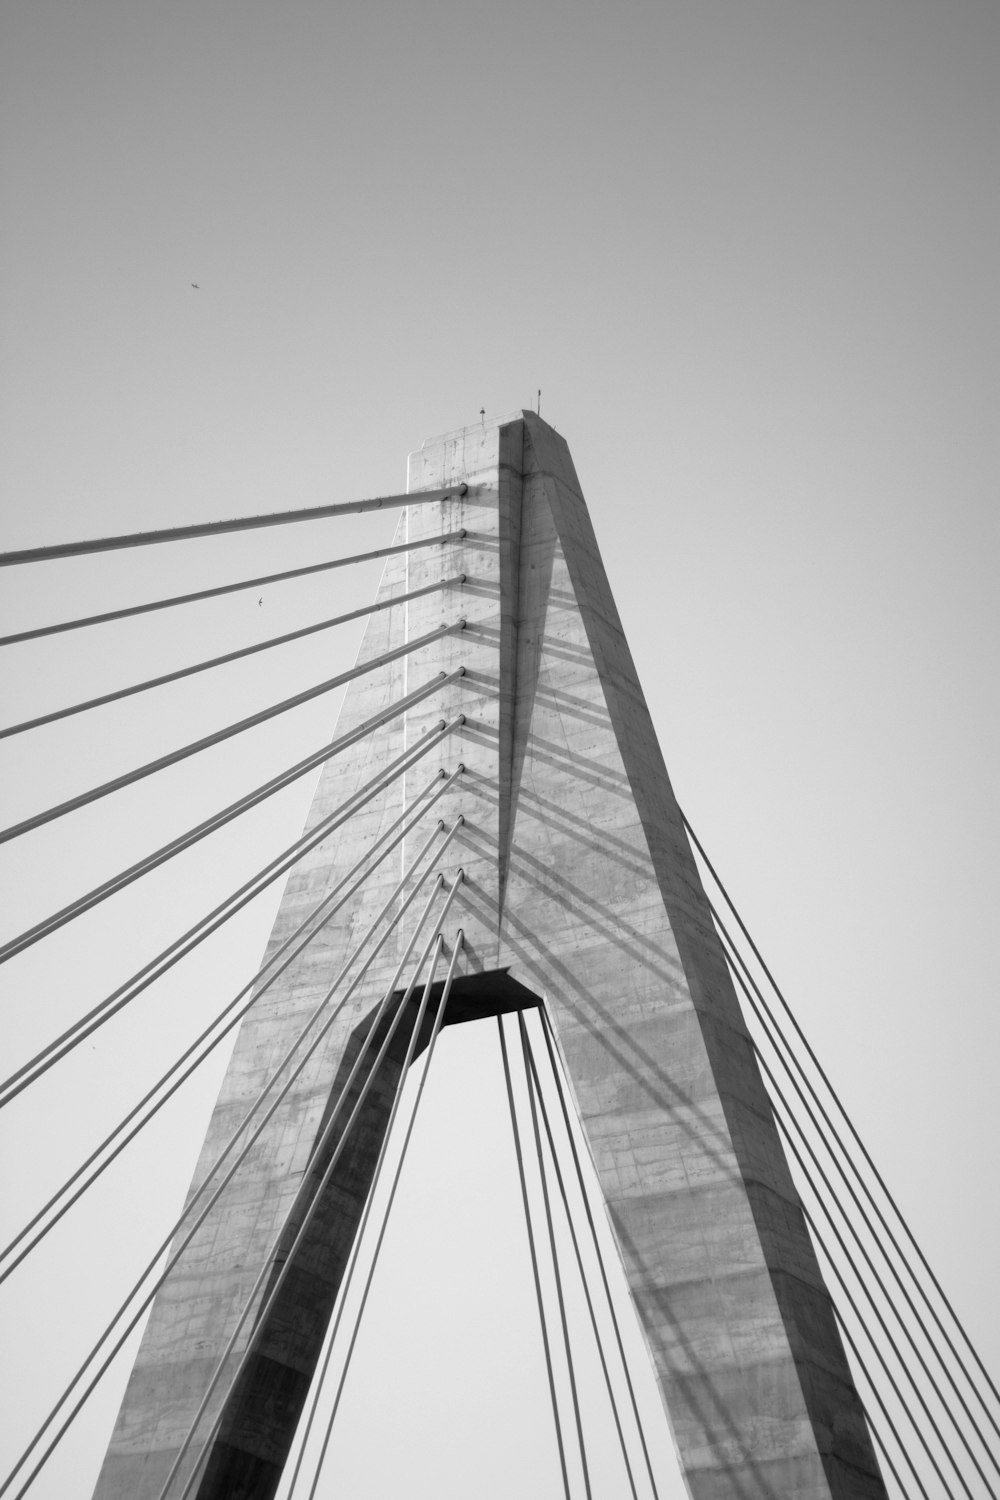 Photo en niveaux de gris d’un pont sous un ciel nuageux